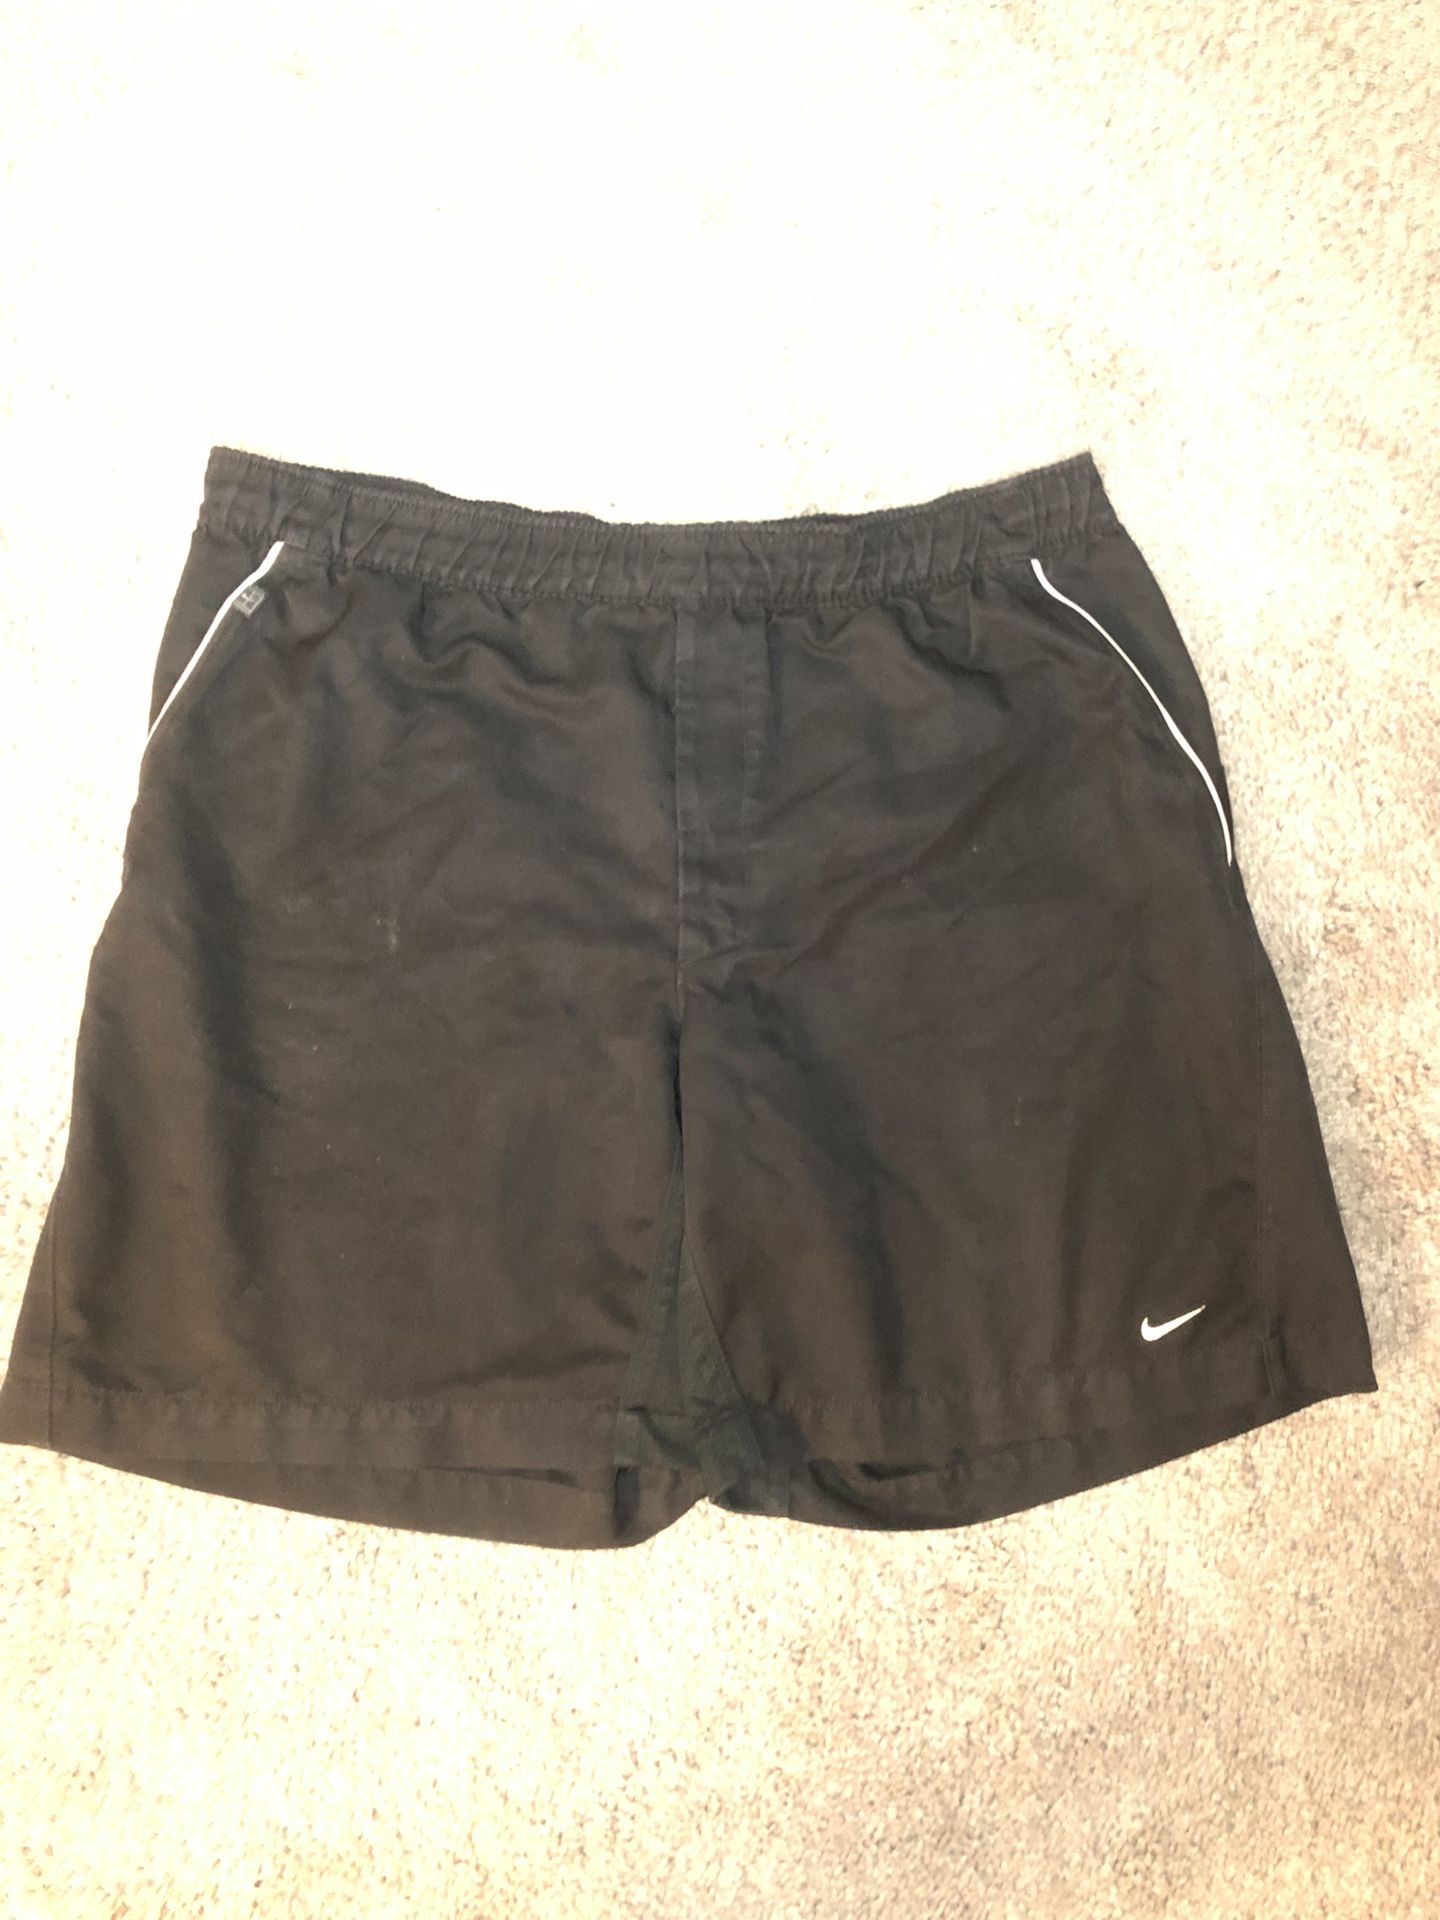 Mens Nike Dri-Fit shorts - size M